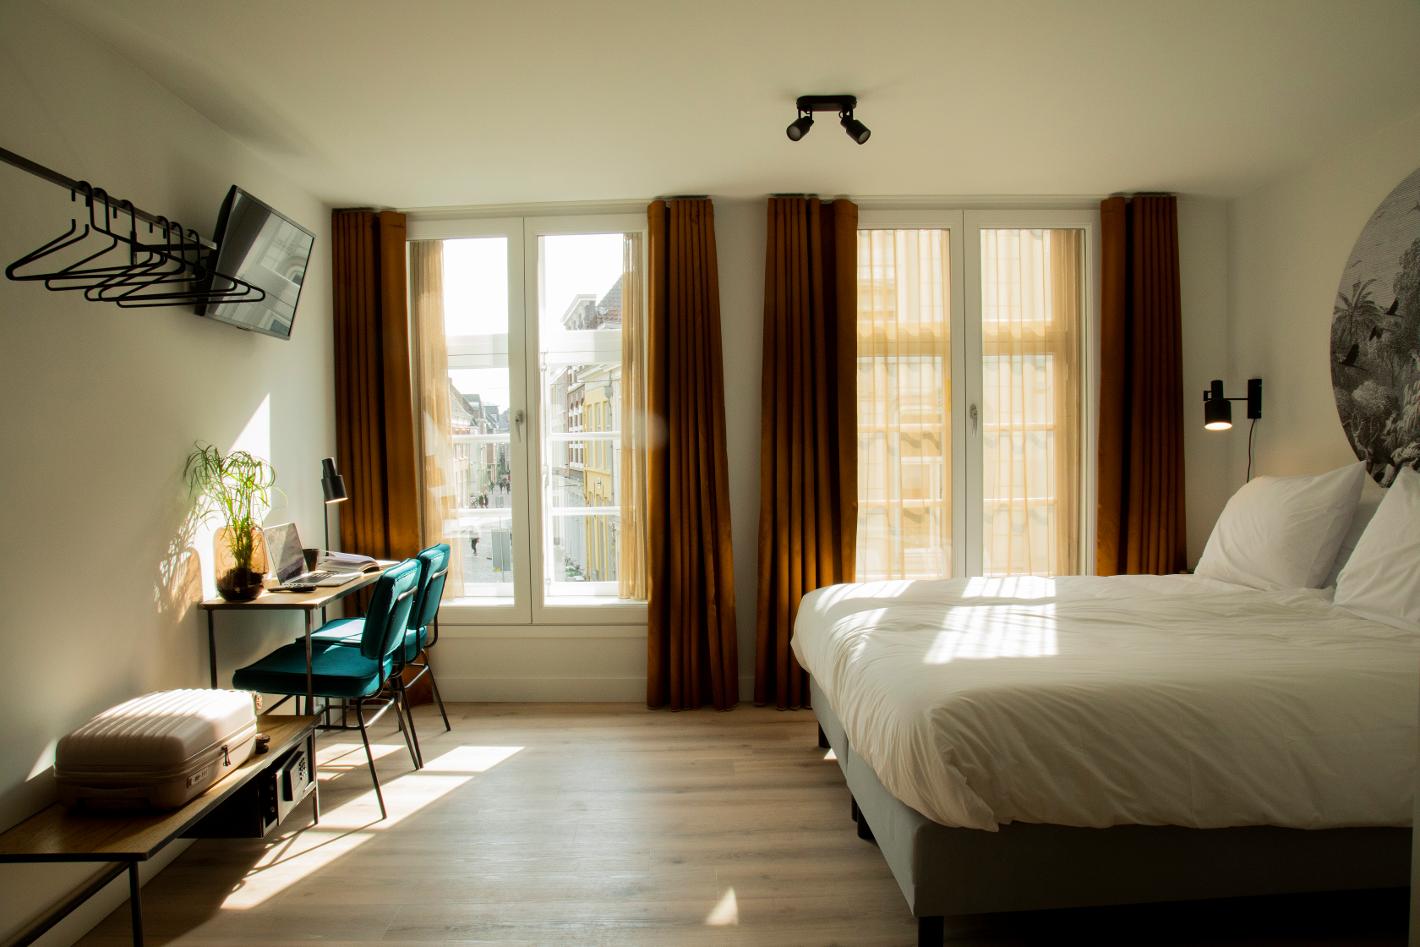 Foto Hotel Haverkist in Den Bosch, Schlafen, Schlafen - #2